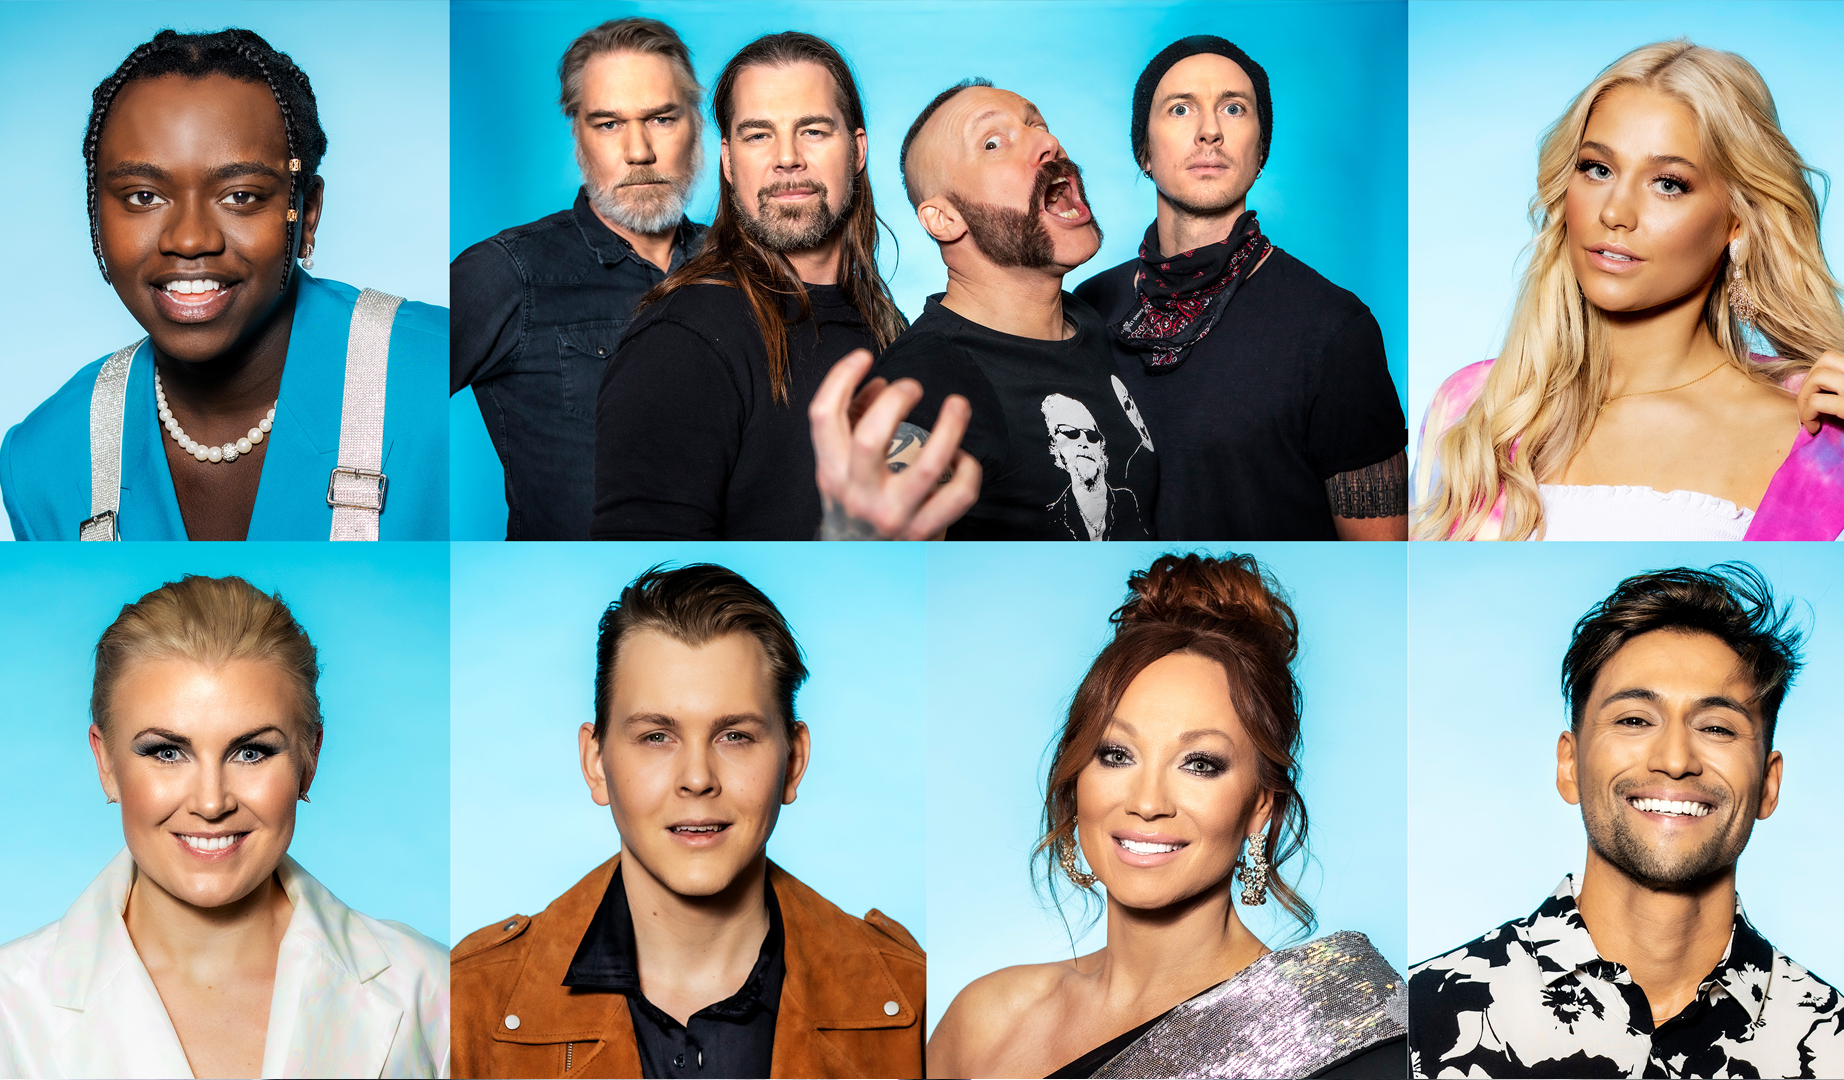 Suecia: ¡Esta noche tercera semifinal del Melodifestivalen 2021!